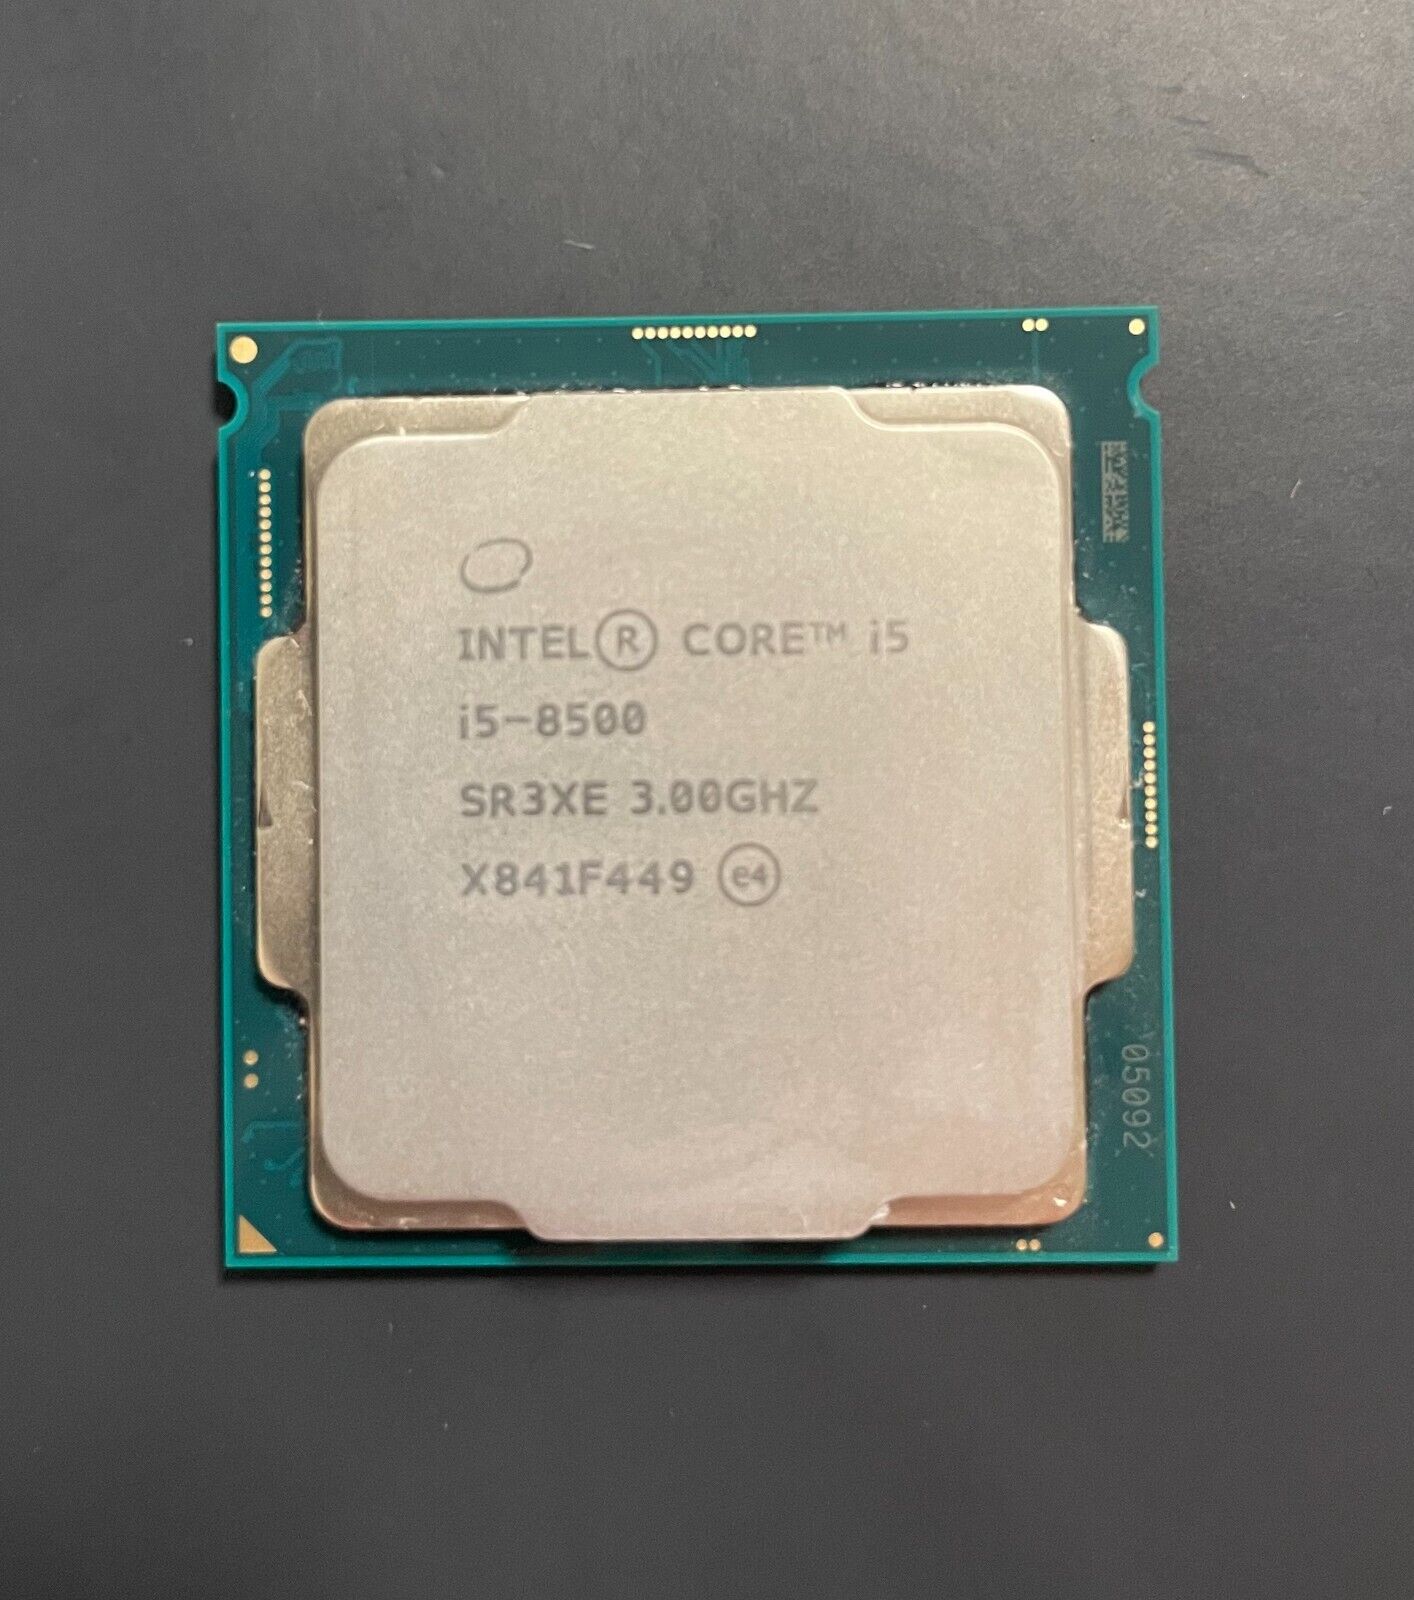 Intel Core i5-8500 3.0GHz 6-Core SR3XE Socket: LGA 1151 CPU Processor